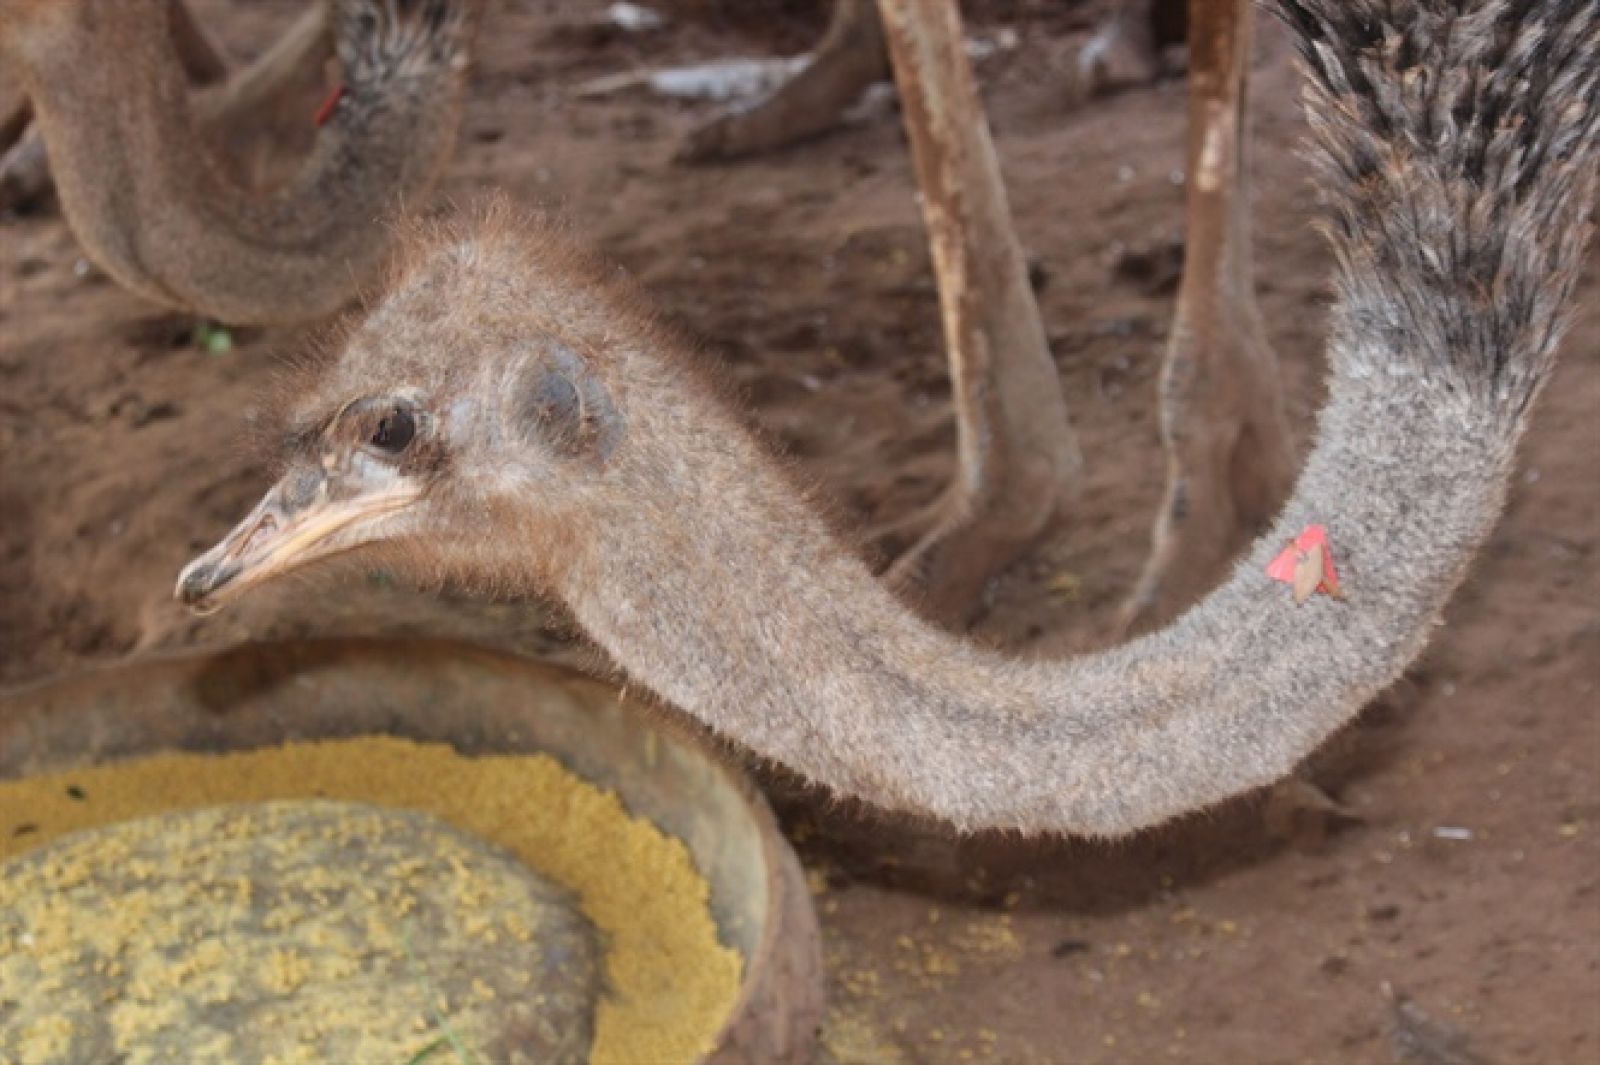 Chim đà điểu được gắn mã số vào cổ để dễ quản lý, chăm sóc